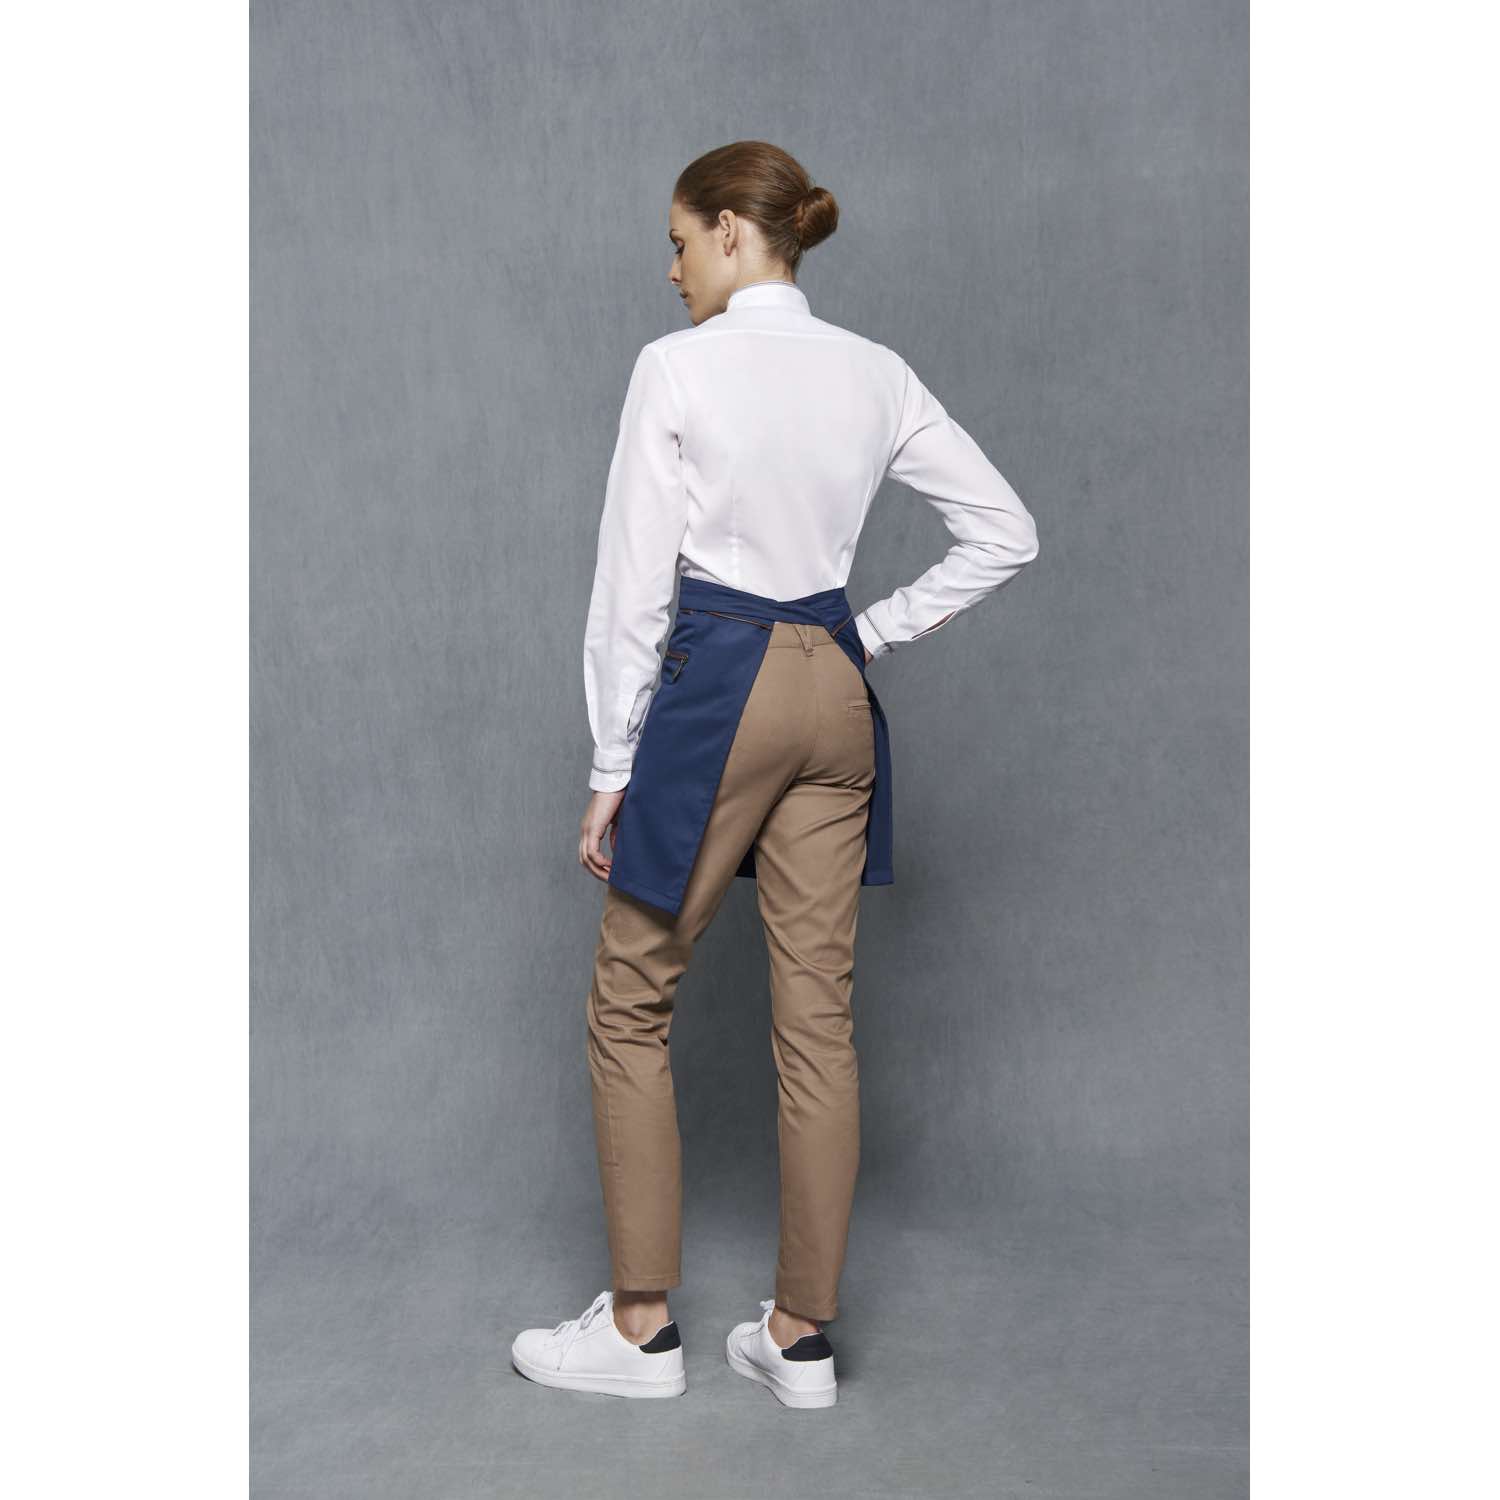 Pantalón chino para camarera Slim Fit Ropa laboral